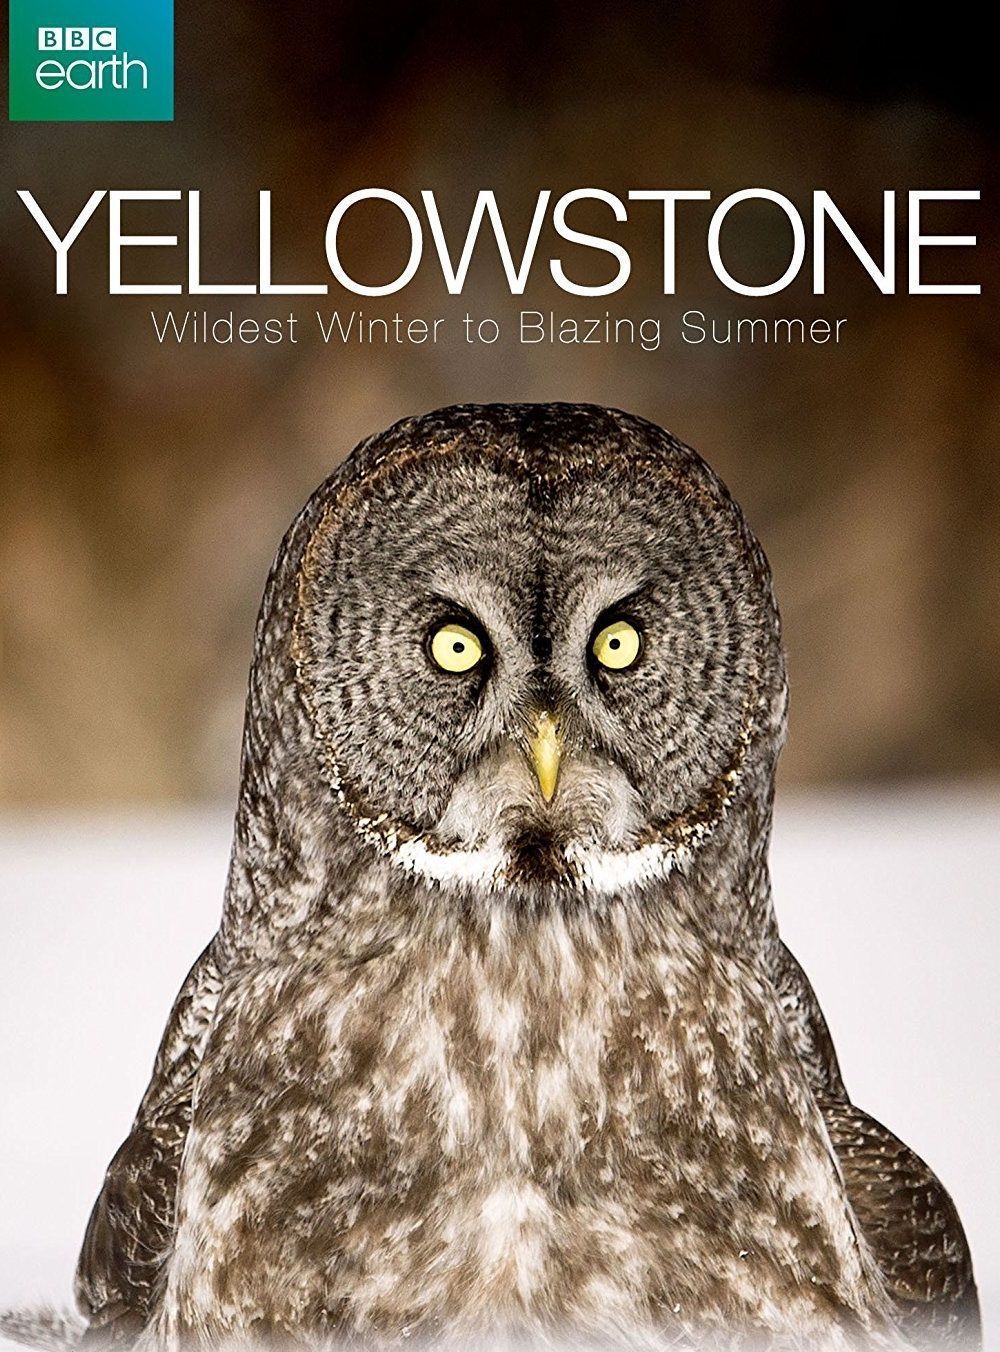 Yellowstone: Wildest Winter to Blazing Summer